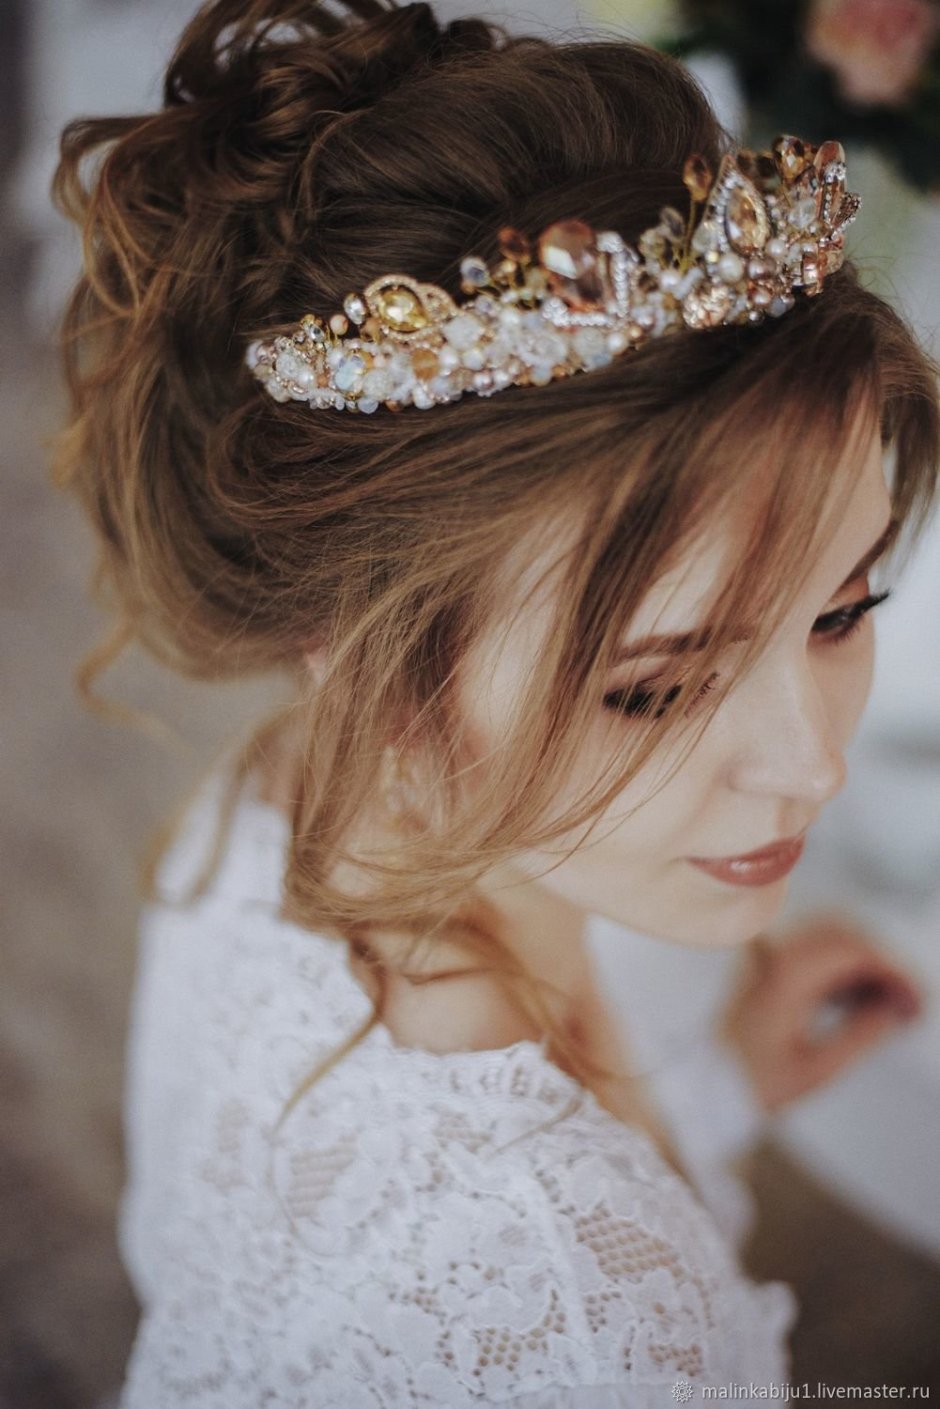 Свадебная корона для невесты